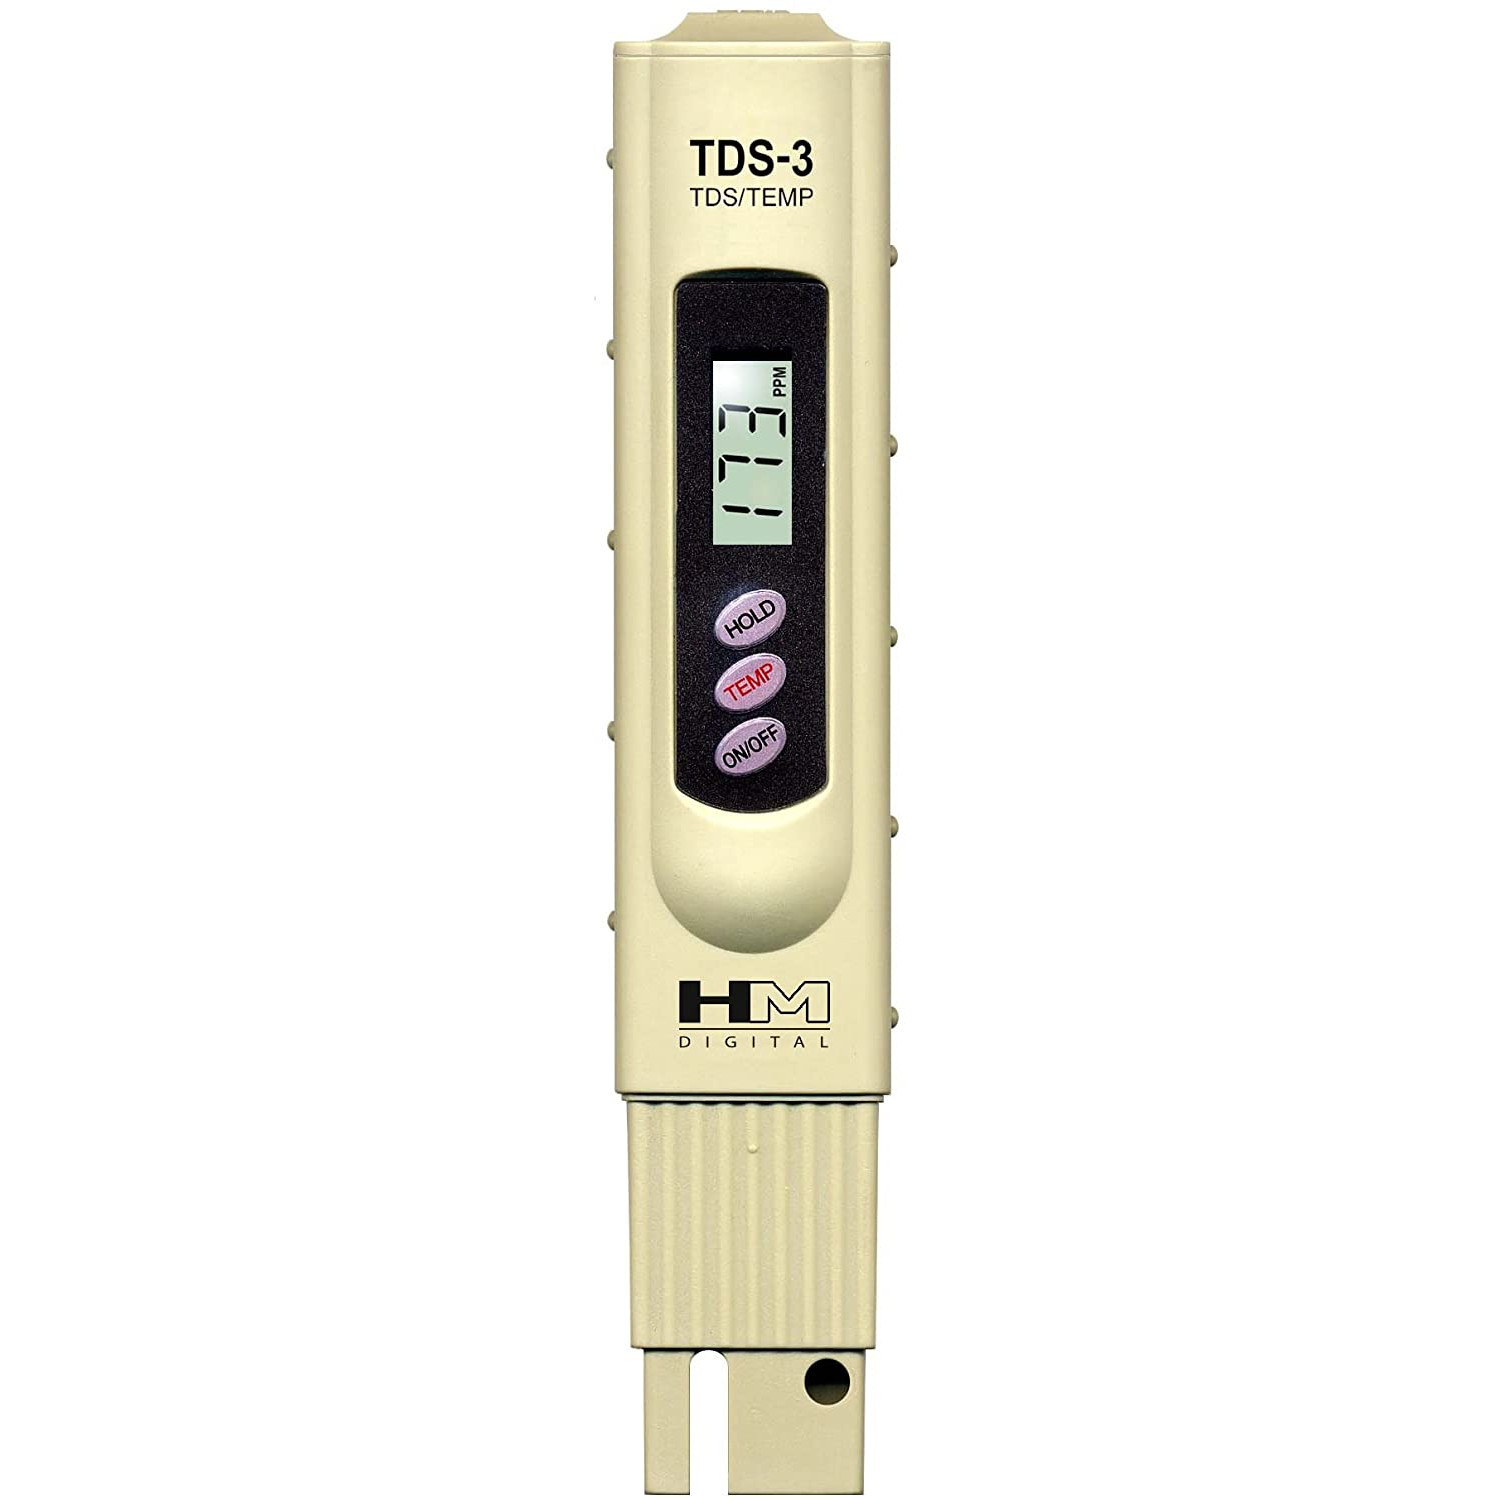 Handheld TDS Meter with Back Light